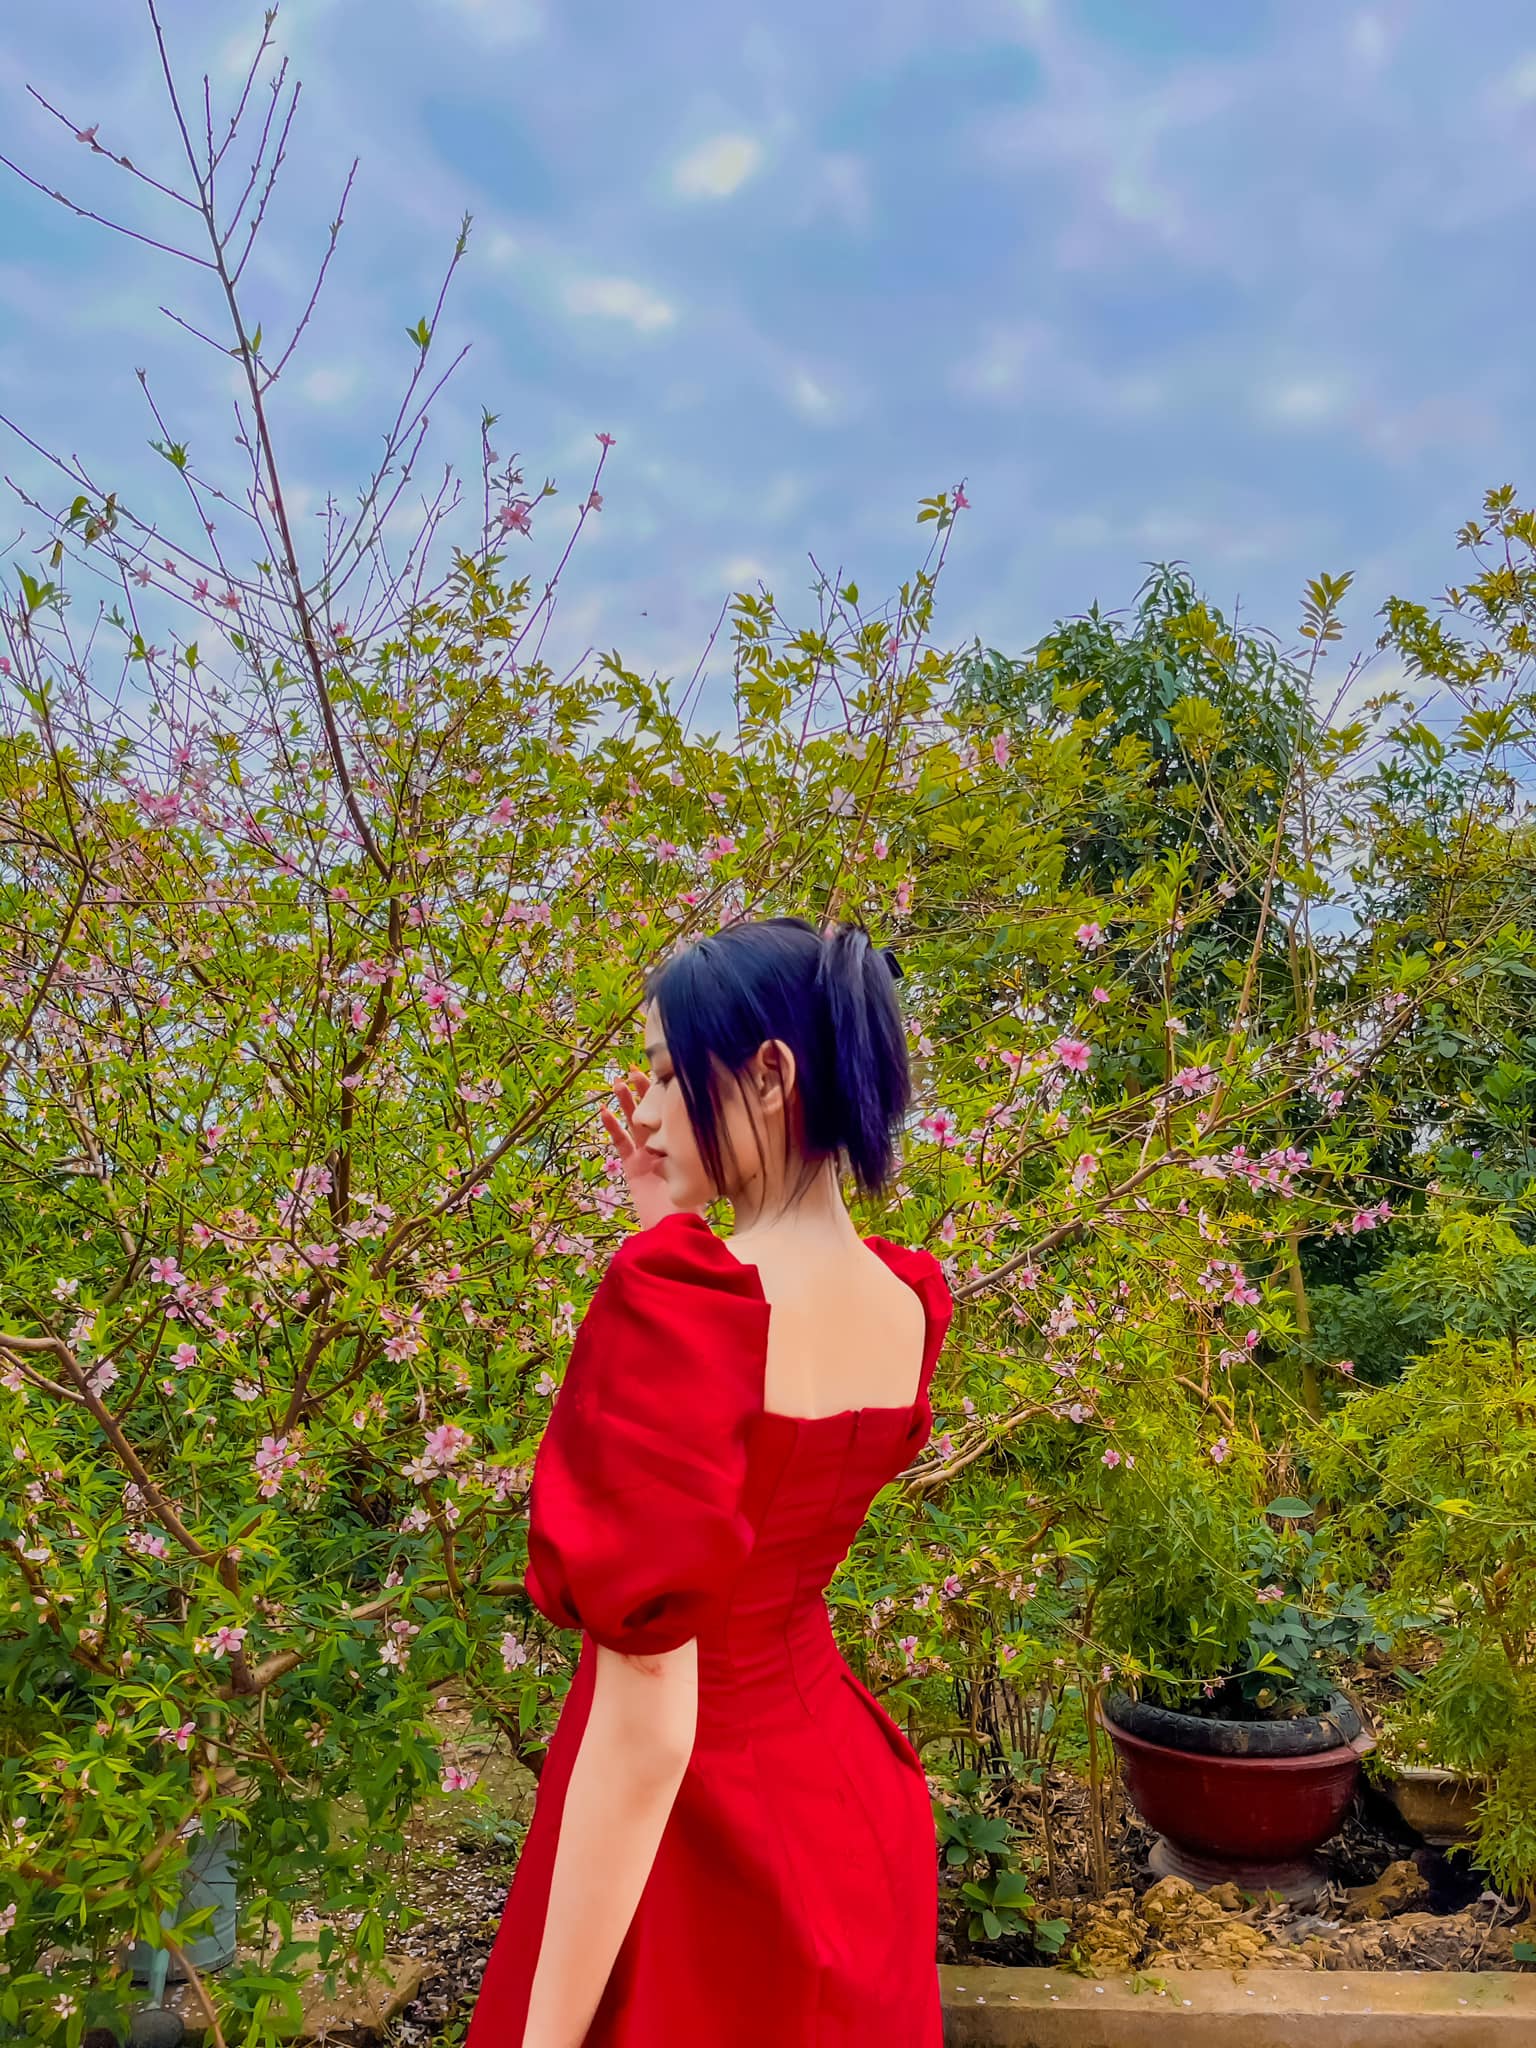 Mùng 1, Đỗ Thị Hà khoe ảnh bên gia đình. Hoa hậu Việt Nam 2020 diện một chiếc váy đỏ ngắn, khoe khéo đôi chân dài trứ danh. Nhìn cô sẽ xinh đẹp lắm nếu như không có kiểu tóc phản chủ